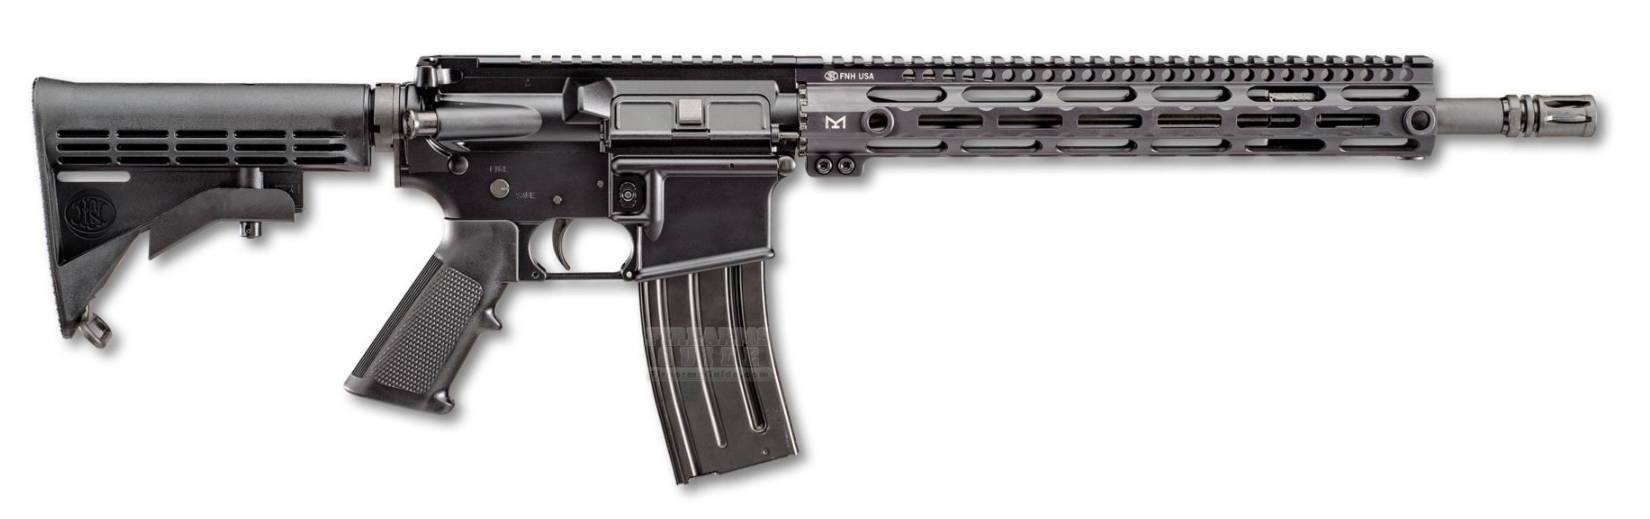 FN 15 SRP G2 Carbine